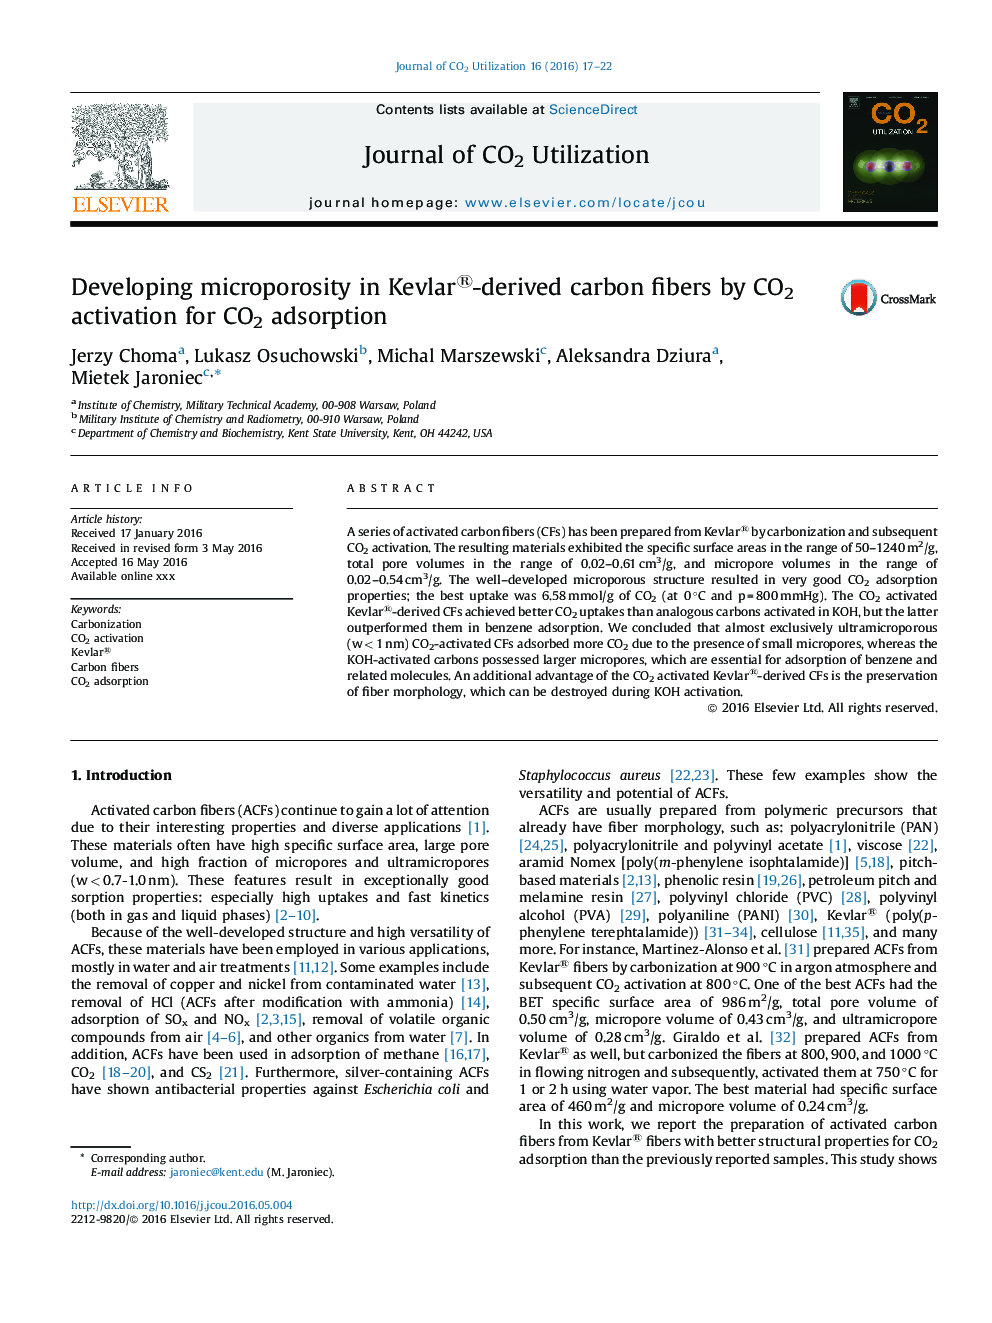 در حال توسعه ریز در الیاف کربن Kevlar® مشتق با فعال CO2 برای جذب CO2